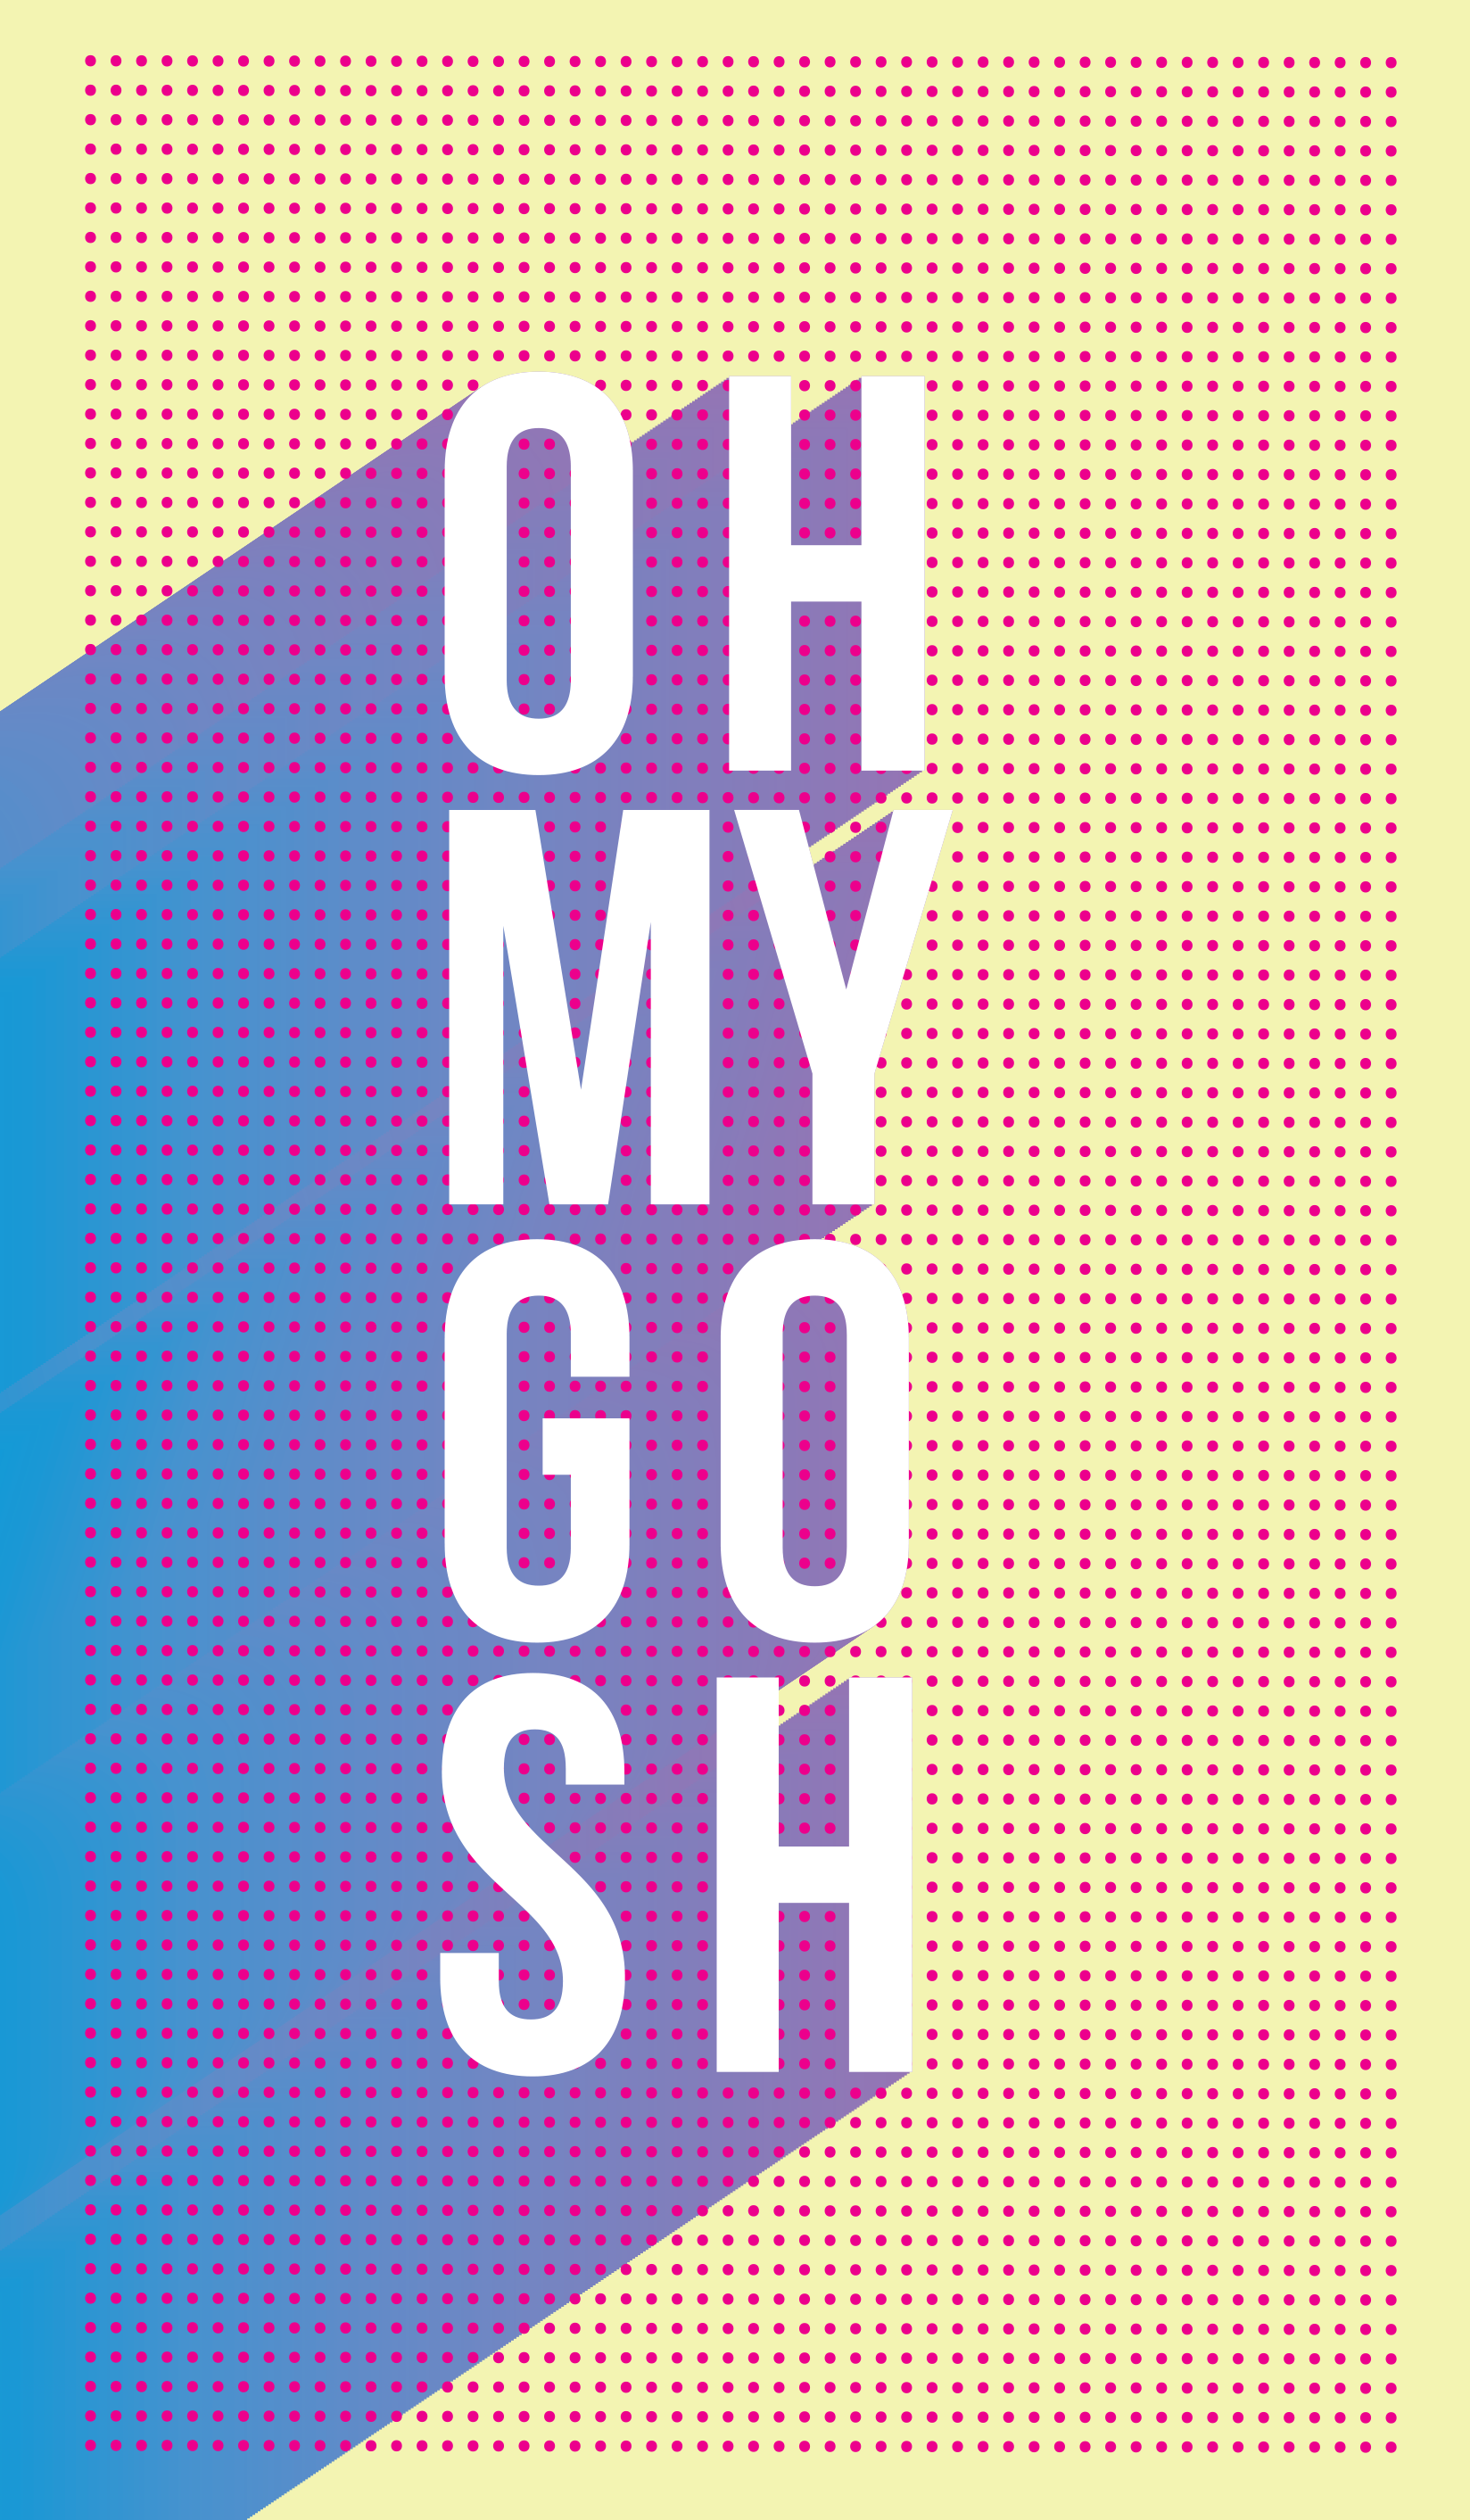 OHMYGOSH